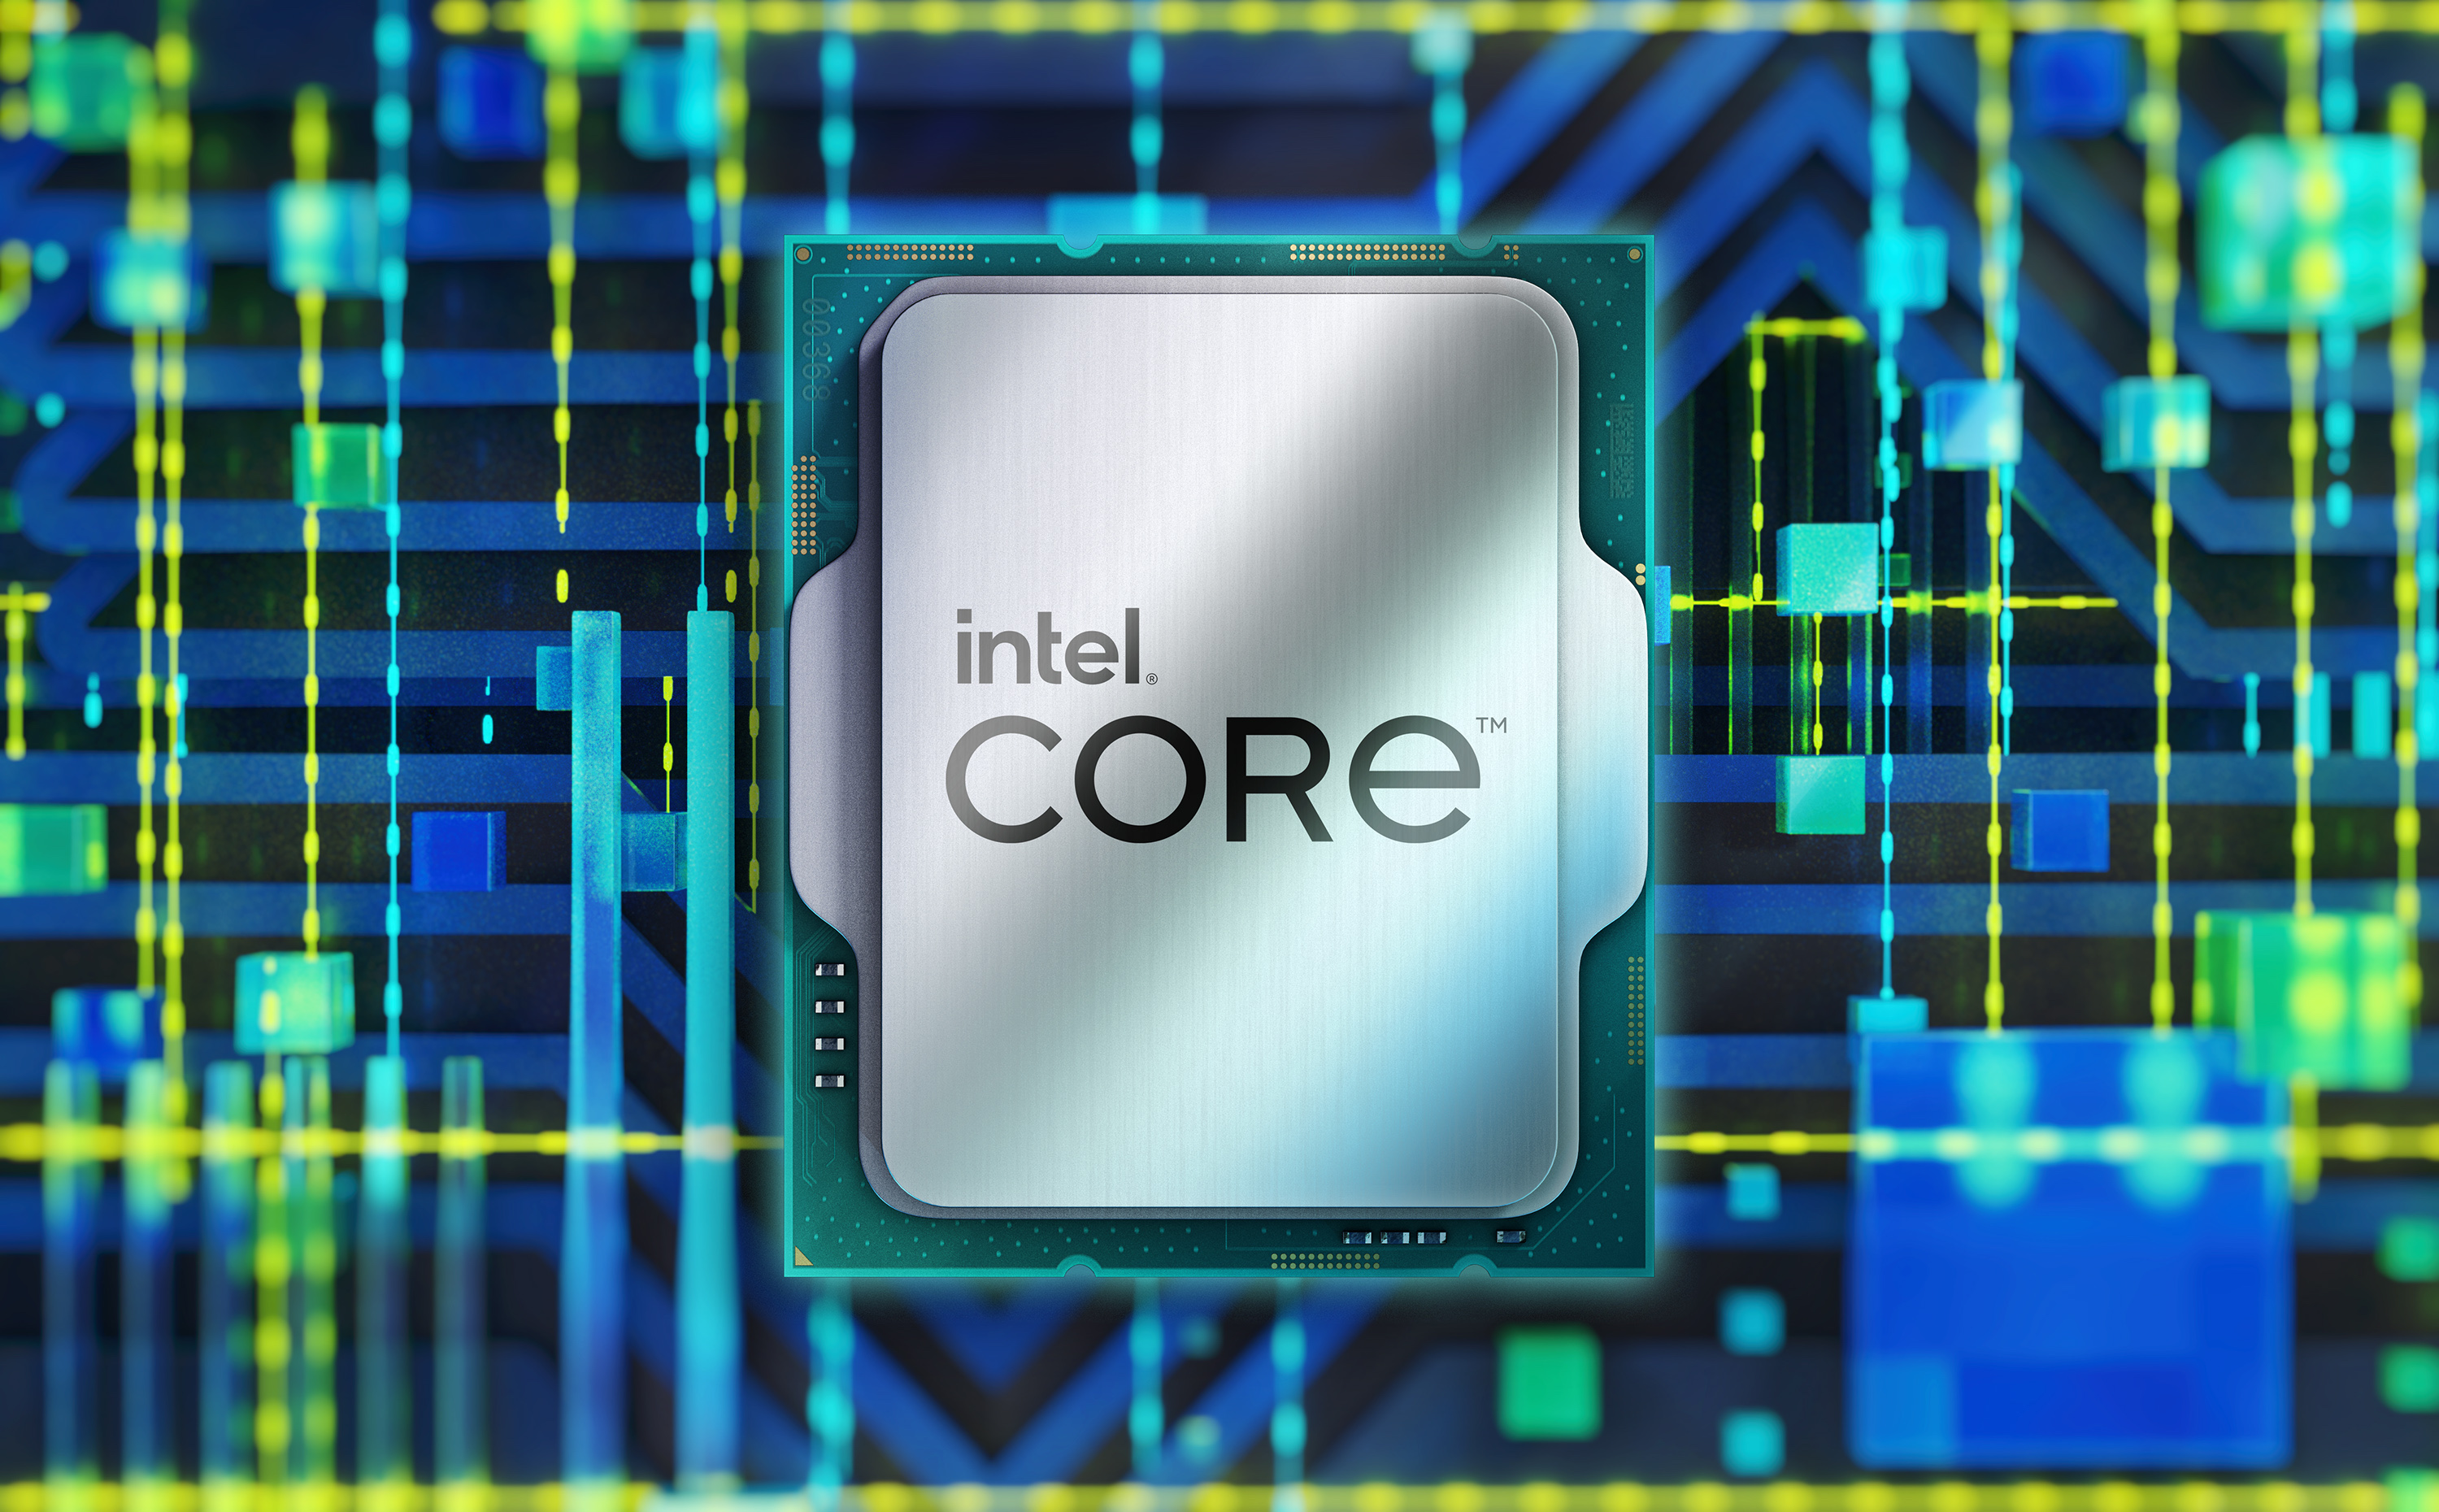 Procesor Intel Core i7-12700F je špeciálne určený pre základné dosky s päticou LGA1700 z radu Intel 600 Series, kedy sa pýši 12 jadrami s maximálnym taktom až 4,9 GHz vďaka TB 3.0 technológii.